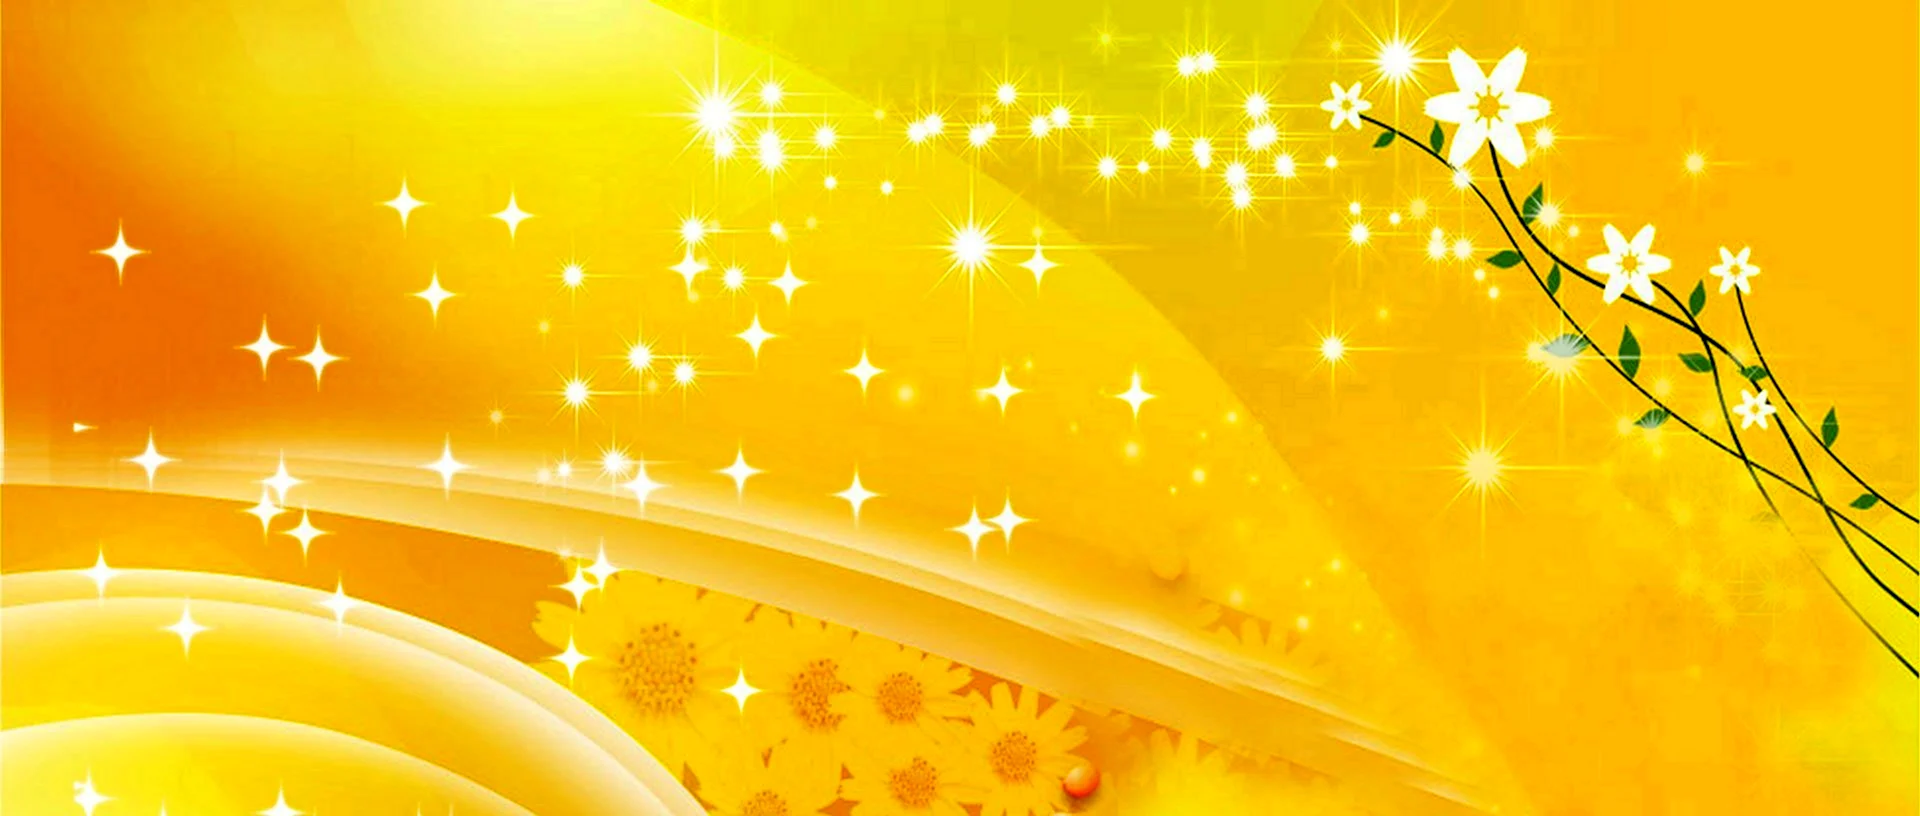 Желтый фон со звездочками красивый